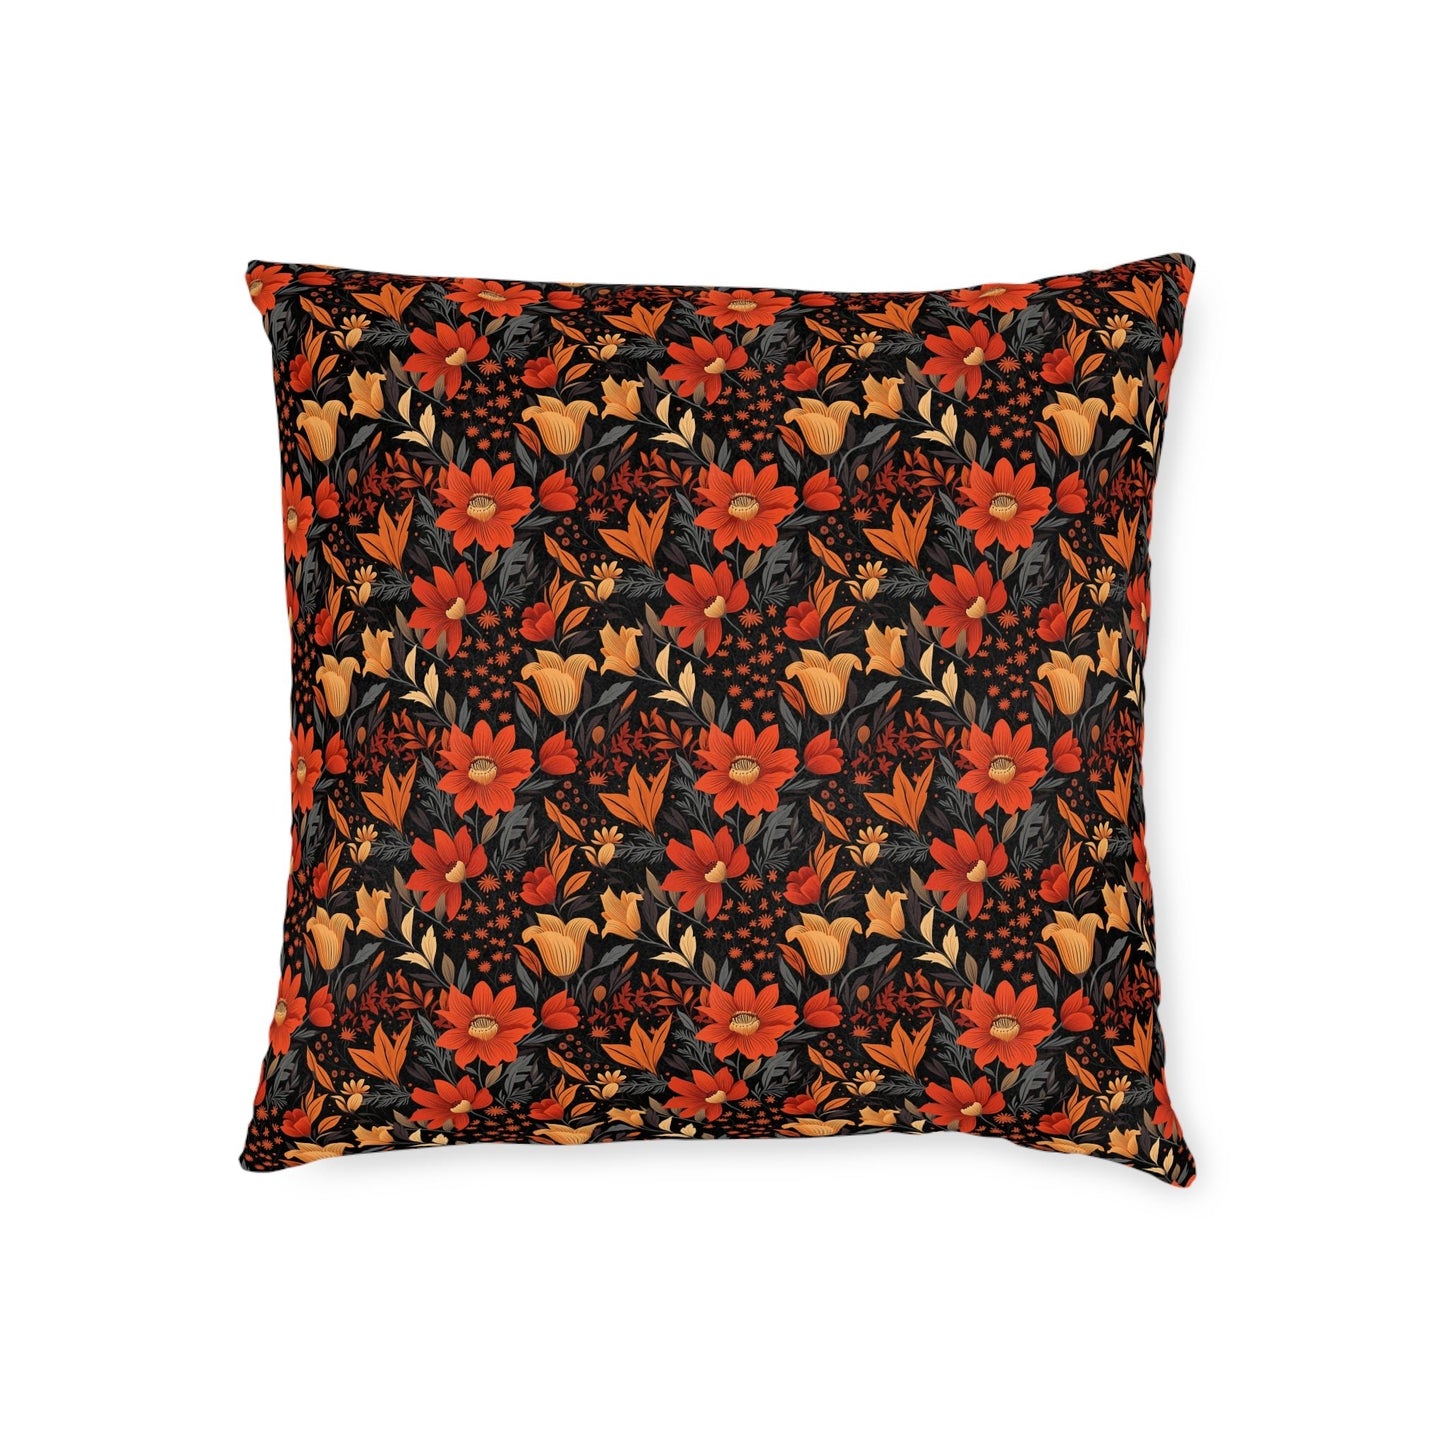 Autumn Blossom Noir: A Dark Floral Canvas - Square Pillow - Pattern Symphony